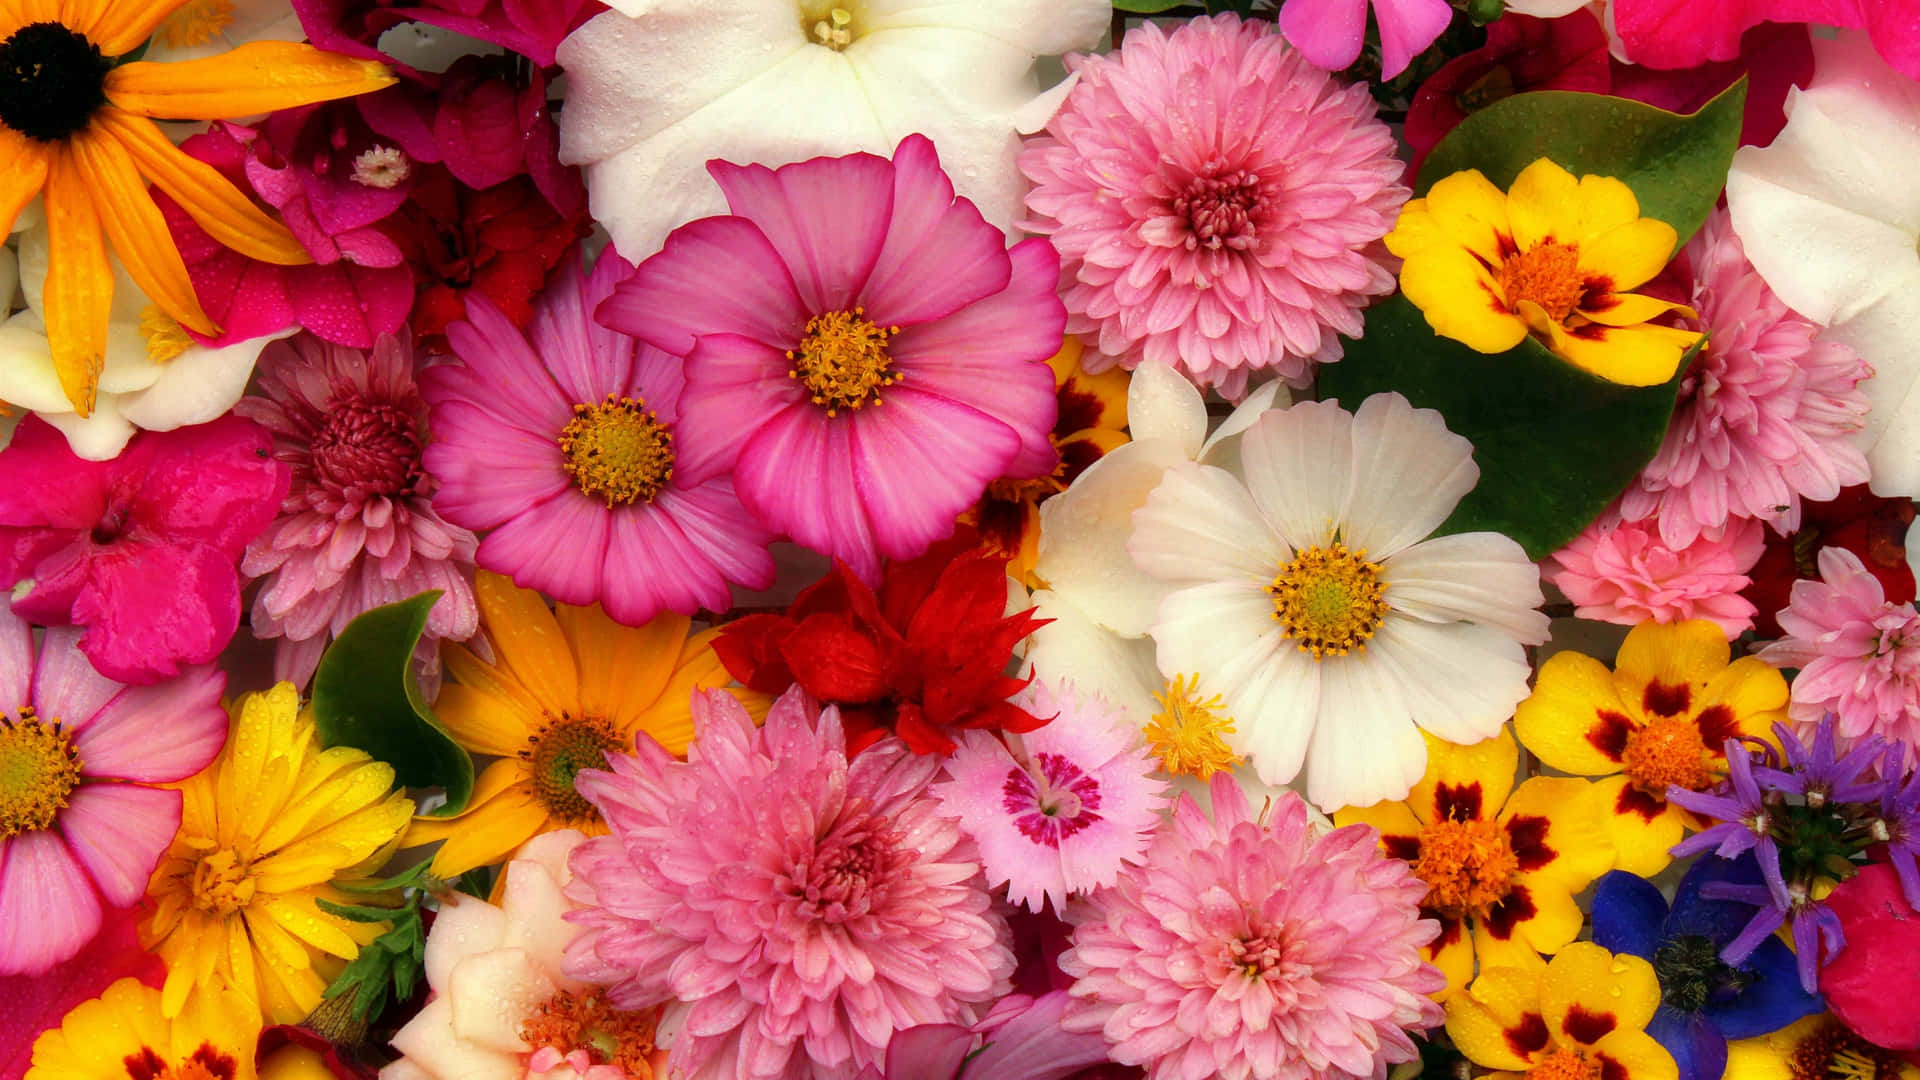 Färgglattarrangemang 4k Blomsterbakgrund.